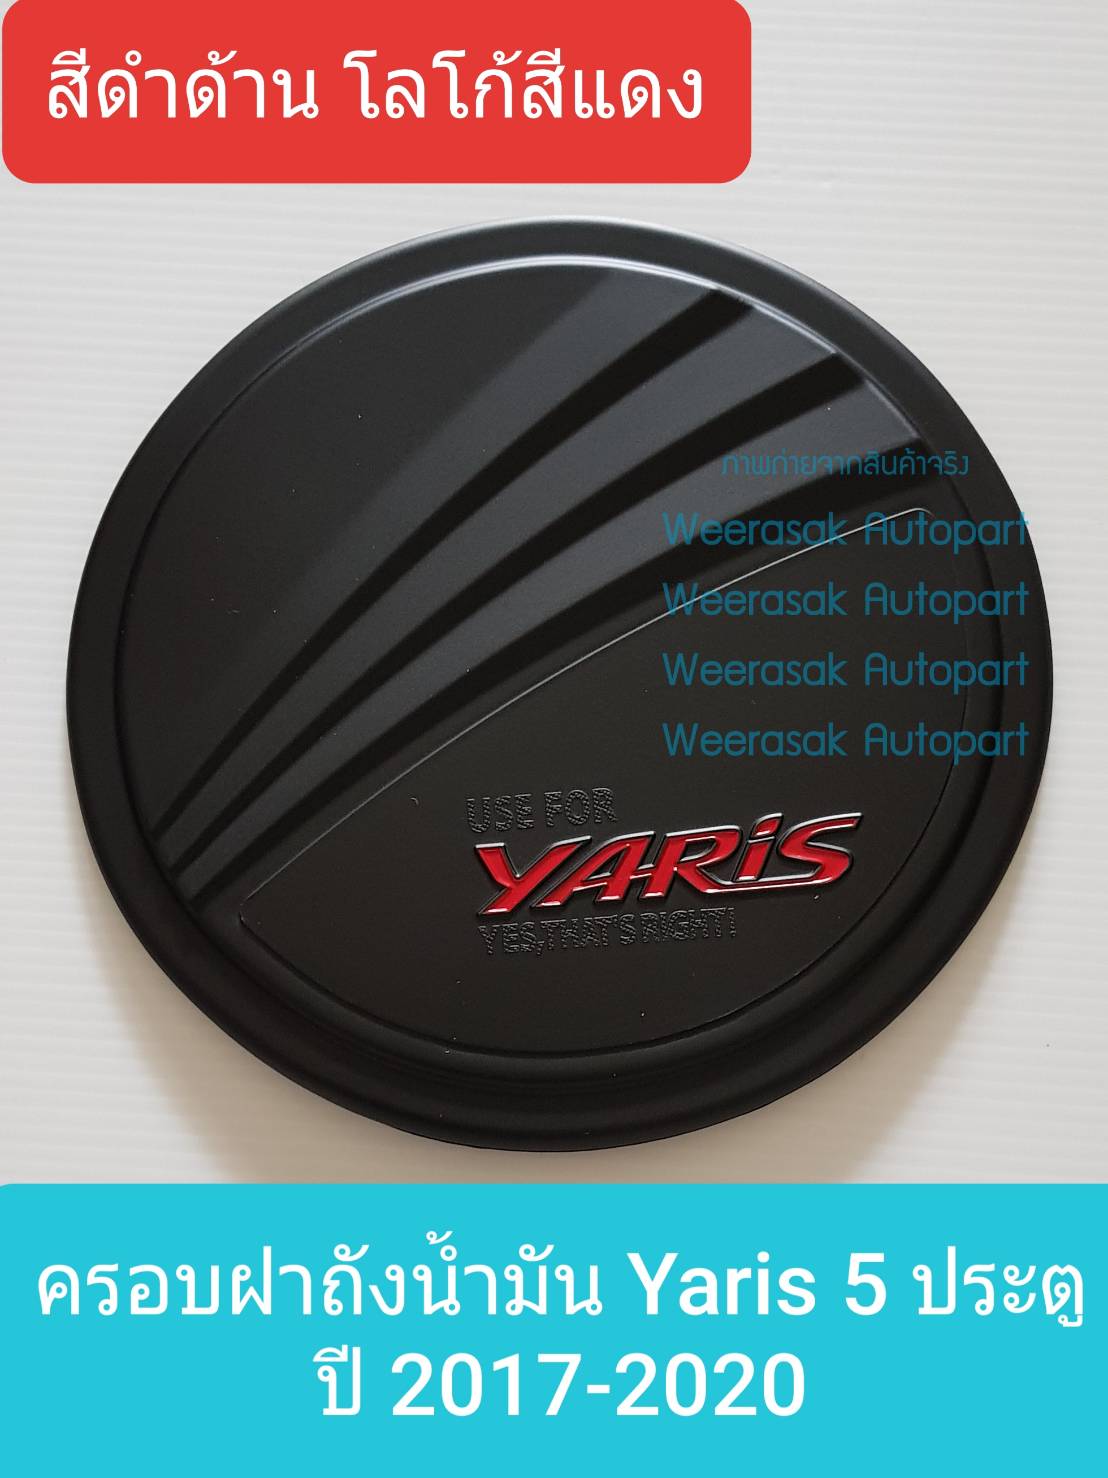 ครอบฝาถังน้ำมัน Toyota Yaris 5 doors โตโยต้า ยาริส 5 ประตู ปี 2017-ปัจจุบัน (สีดำด้านโลโก้สีแดง) (มีเทปกาว 3M แปะให้ด้านหลัง)